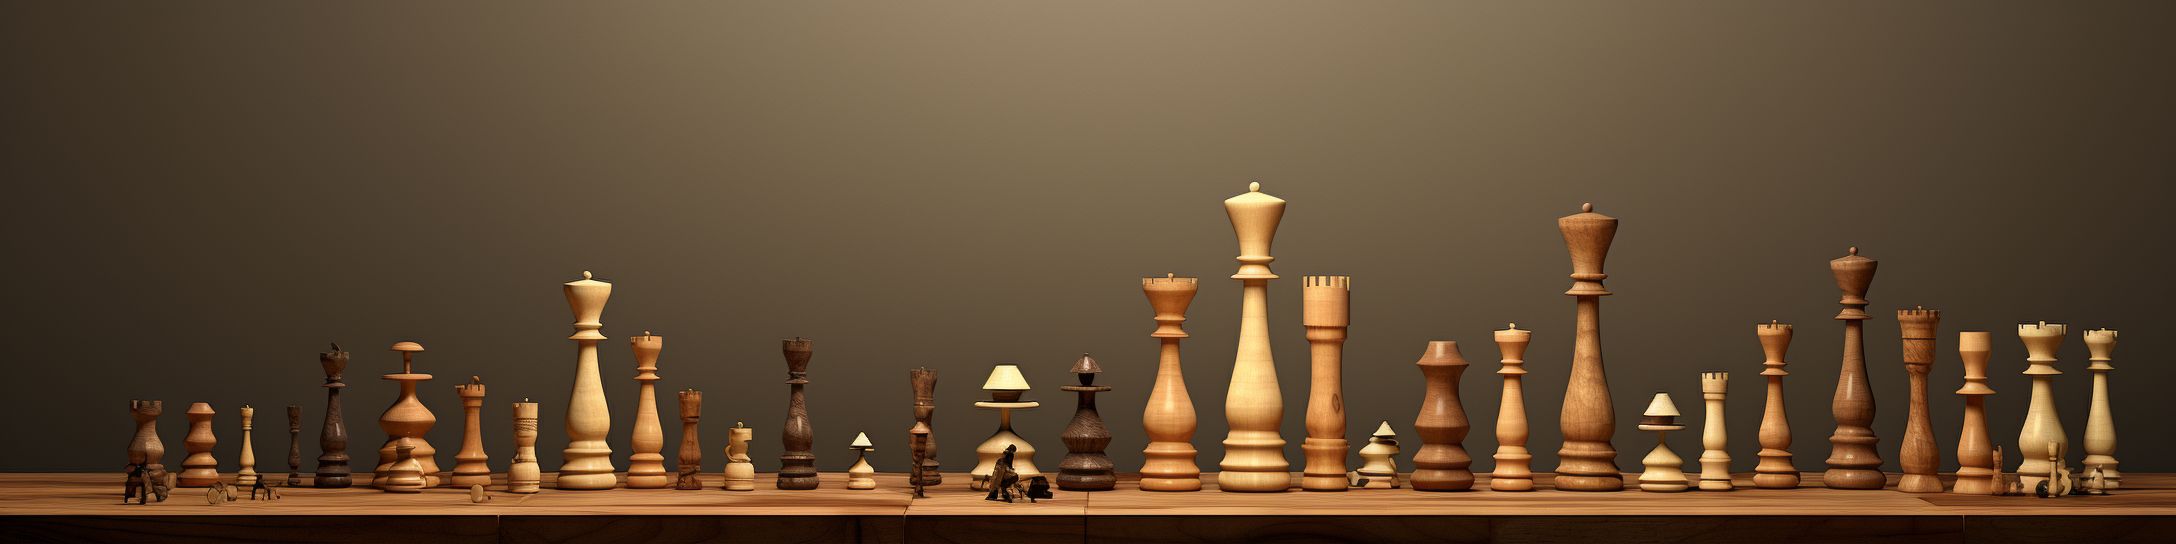 Le rapport entre la taille du jeu d'échecs et l'espace disponible